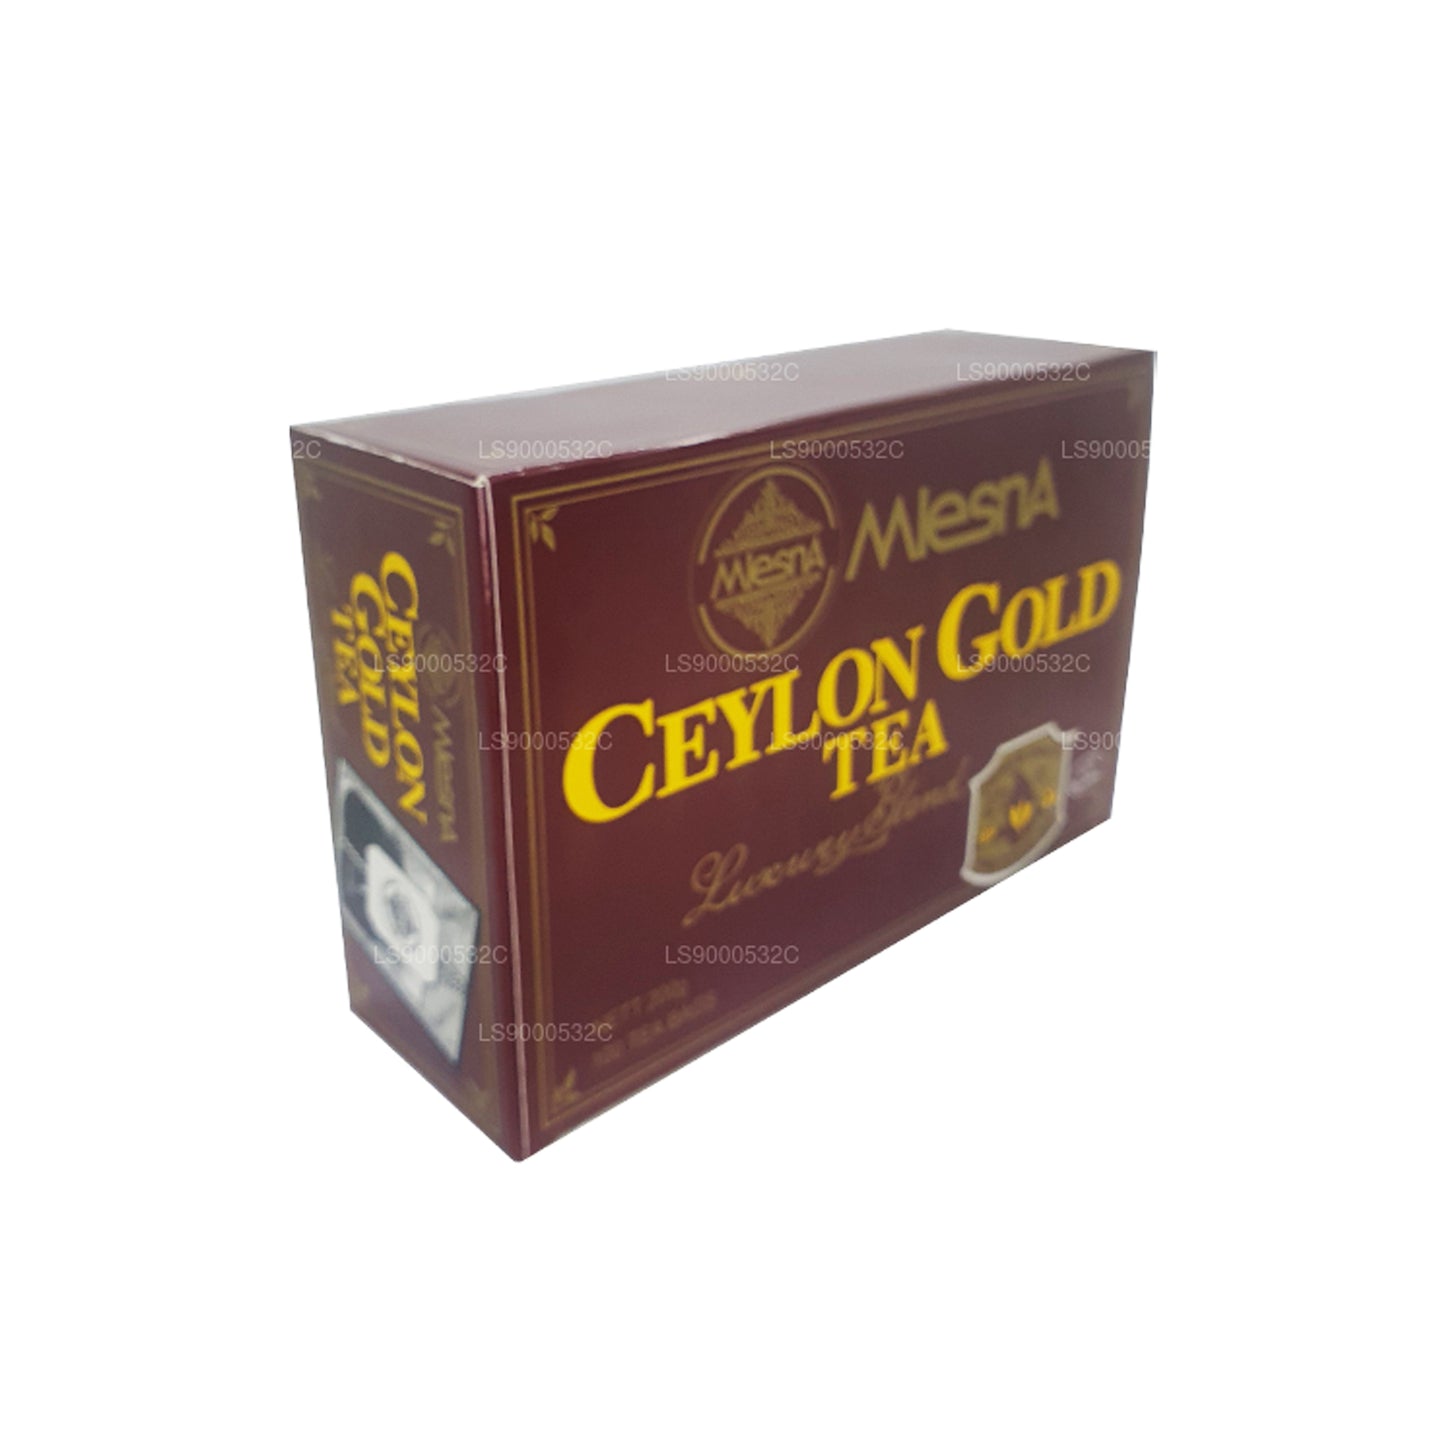 Cadena y etiqueta Mlesna Tea Ceylon Gold, 100 bolsitas de té (200 g)